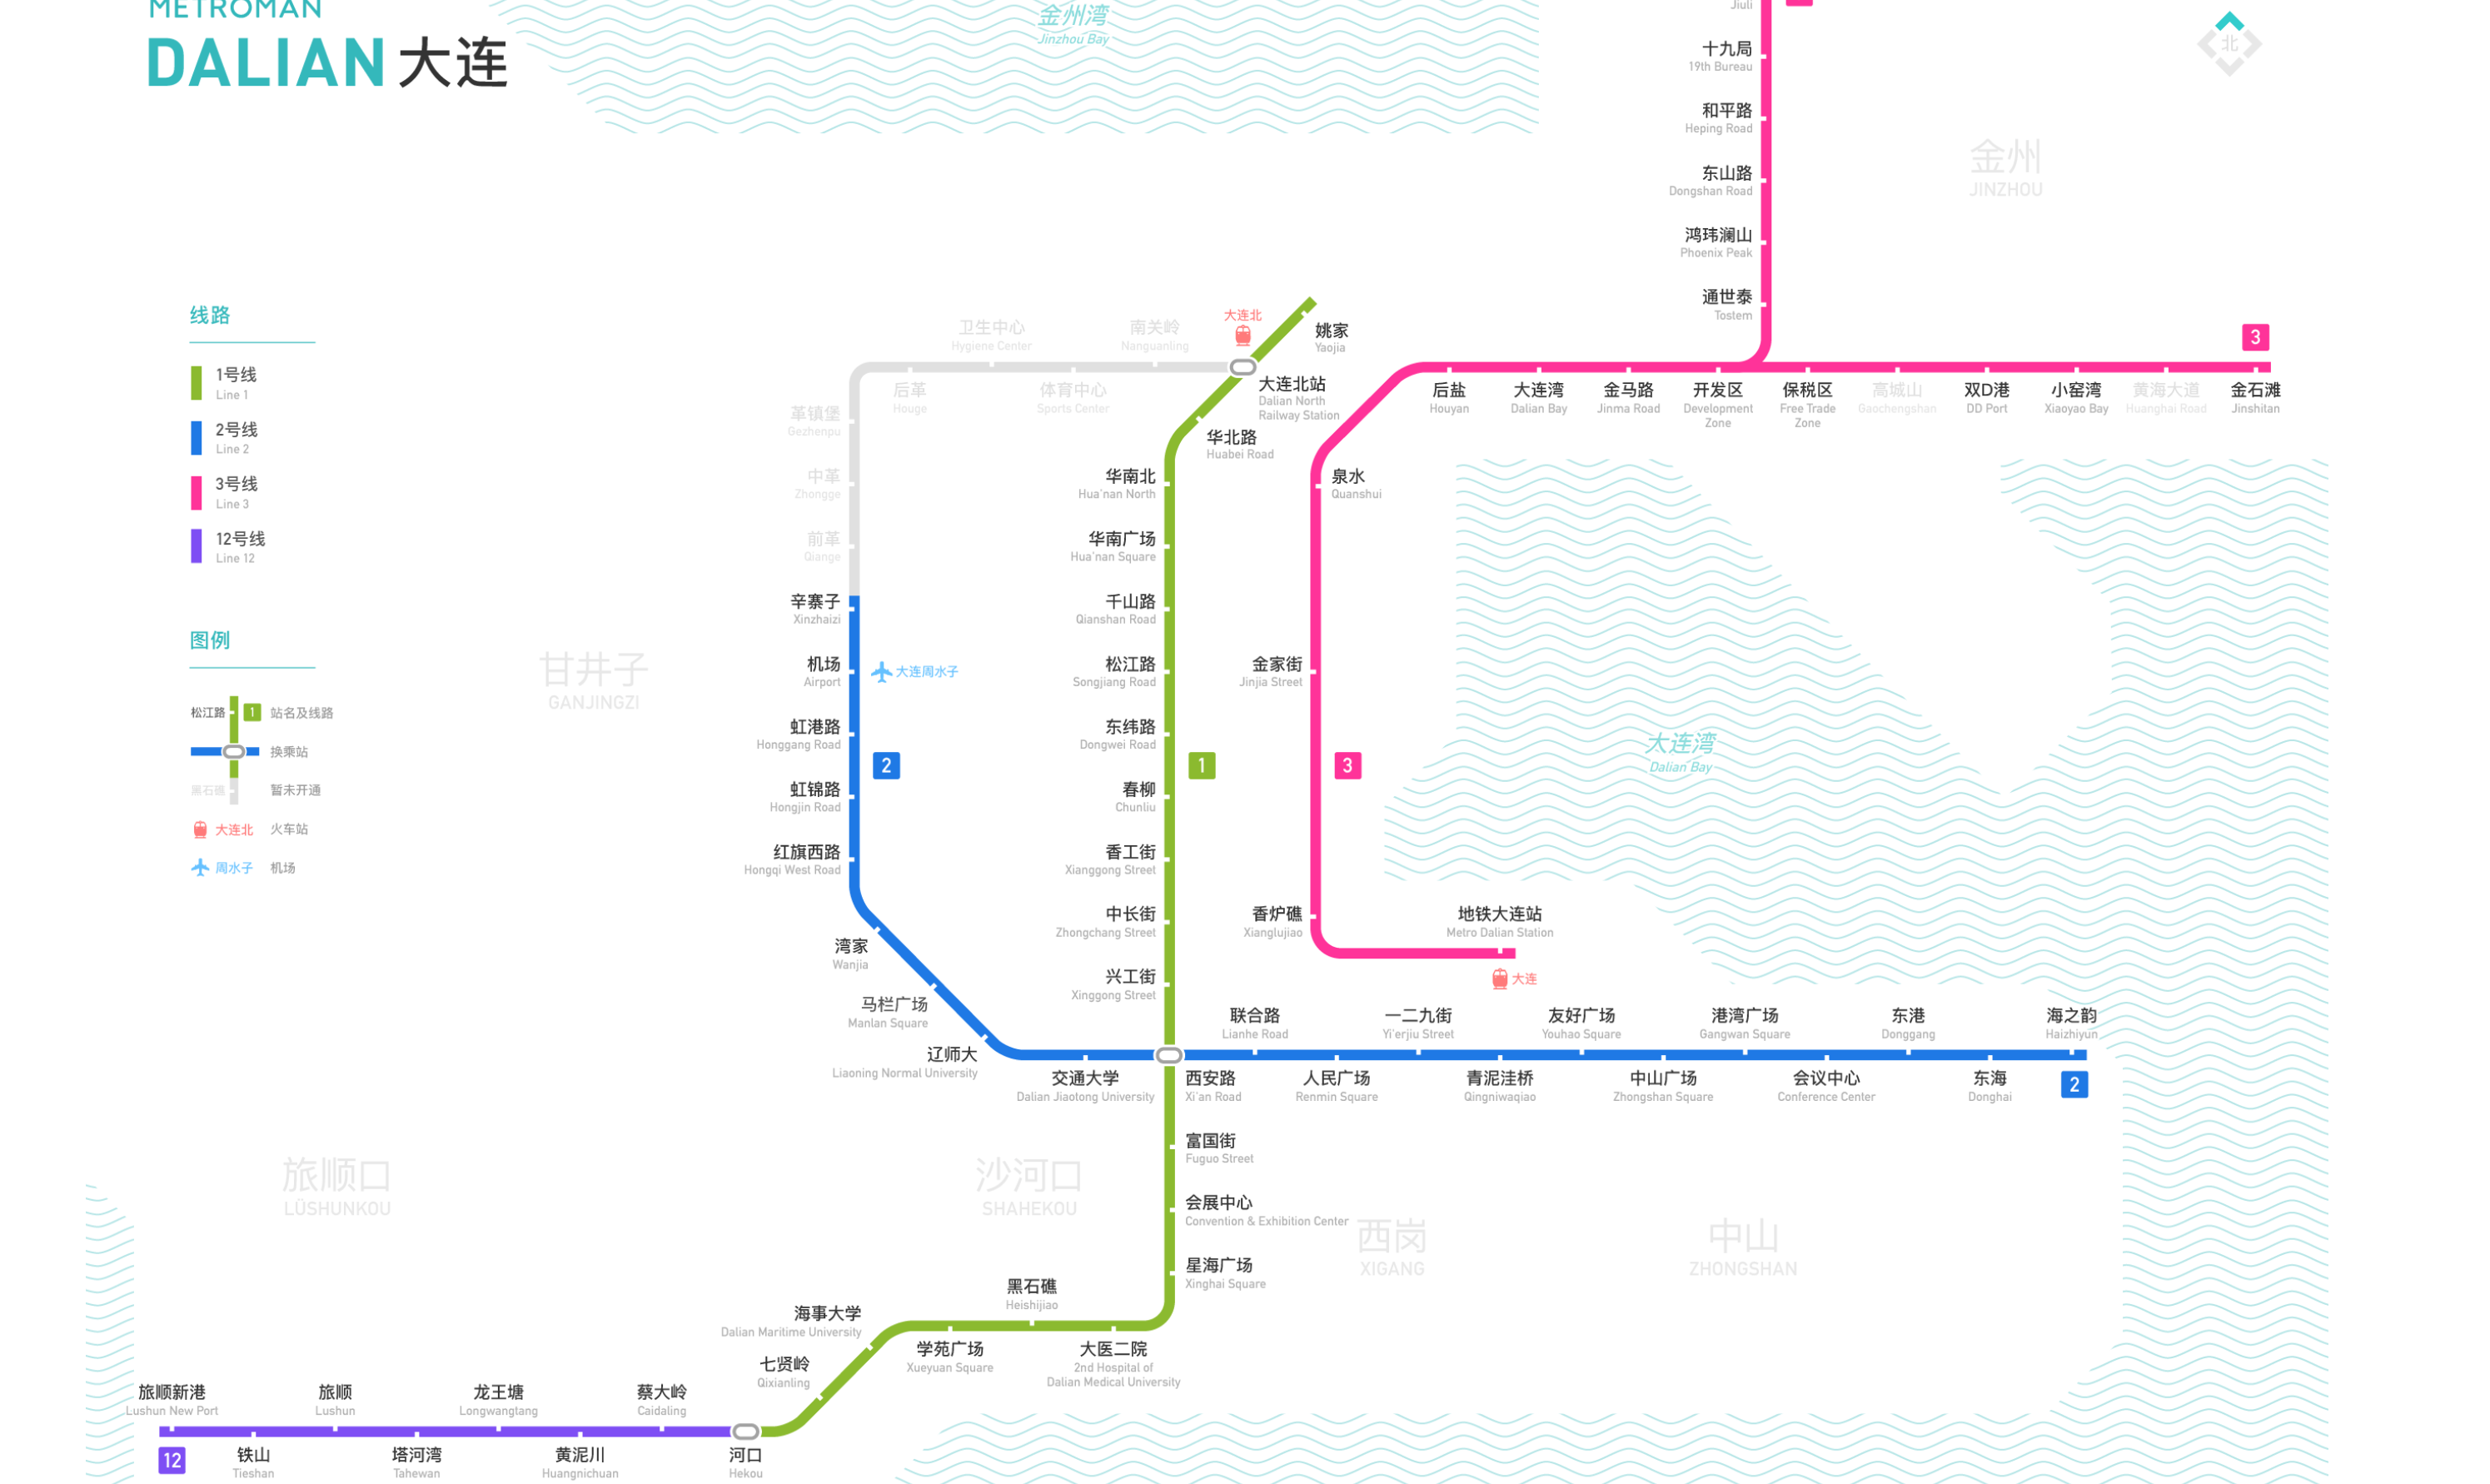 大连地铁规划图 - 哔哩哔哩